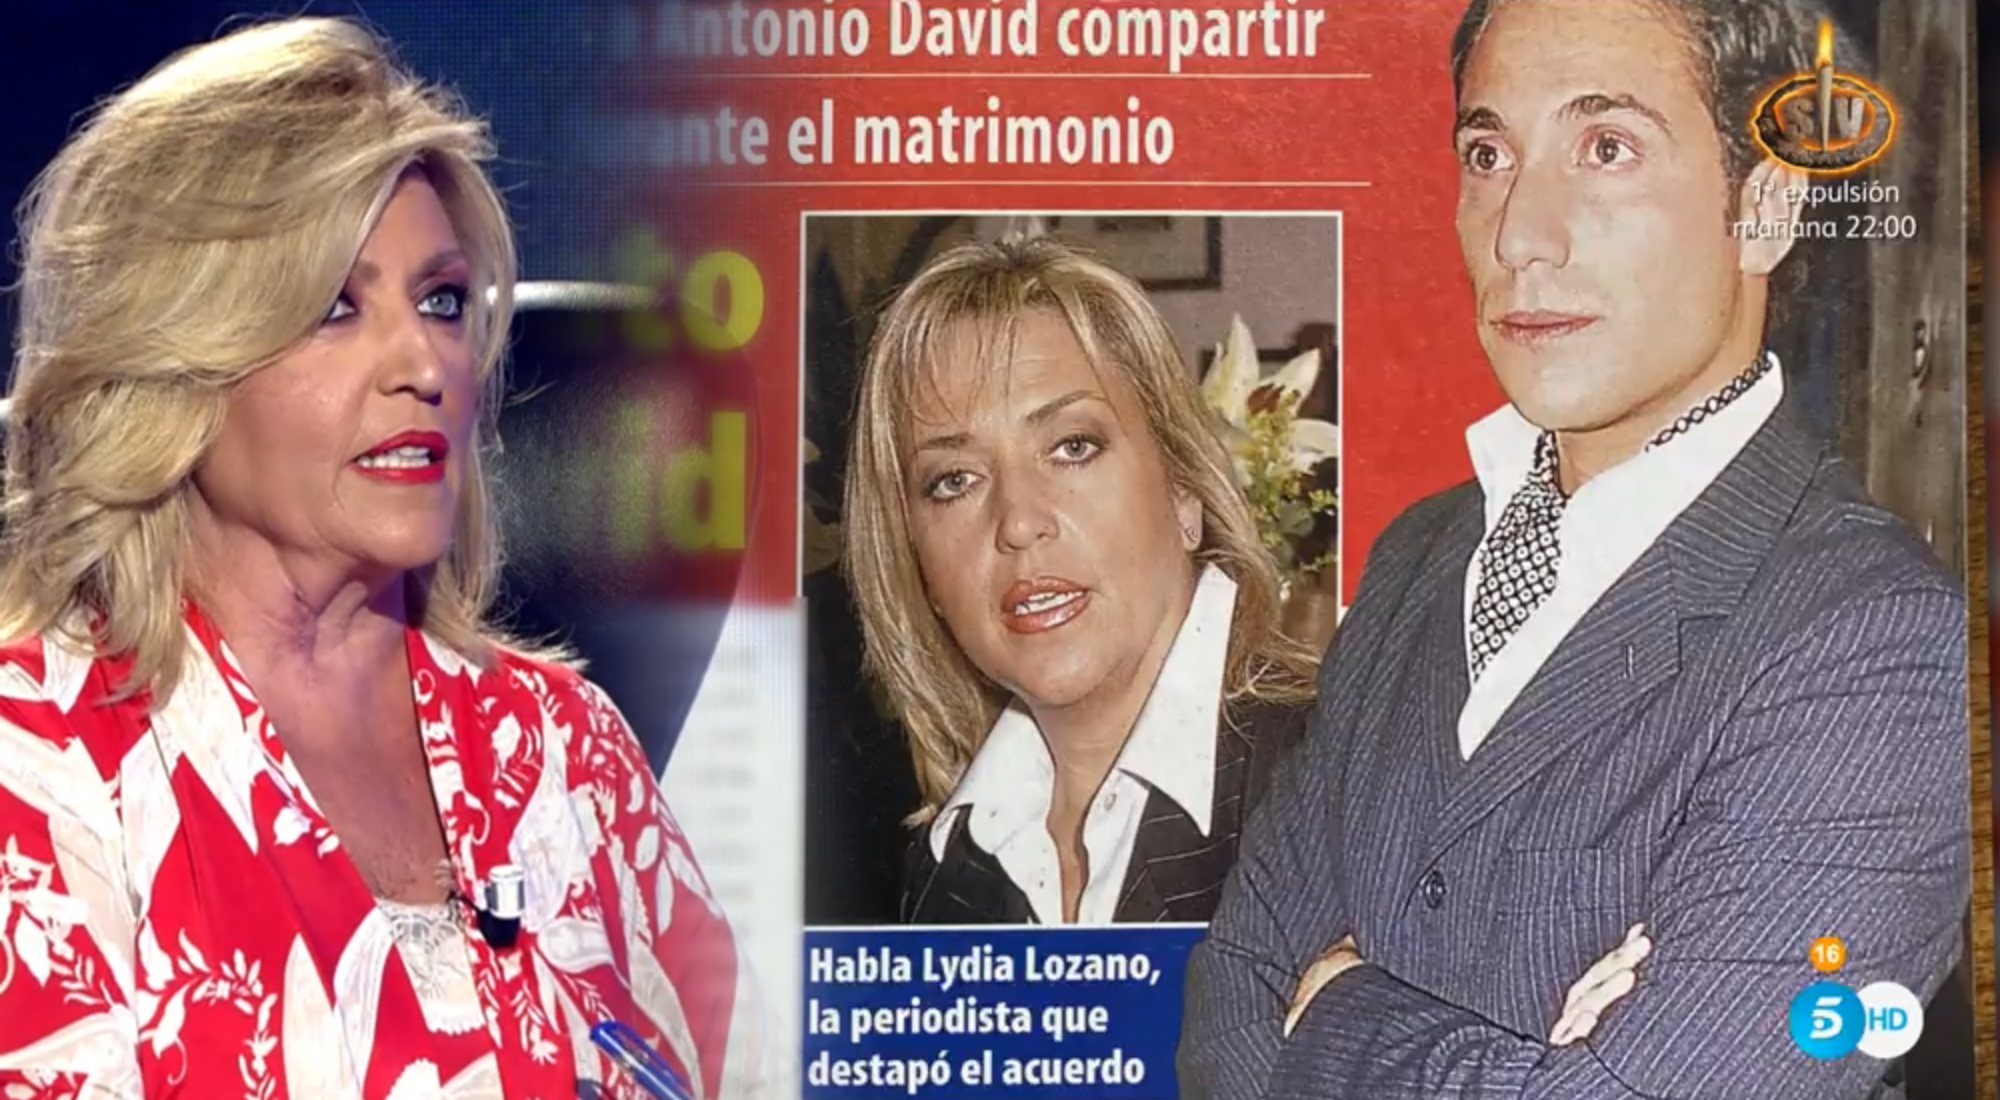 Lydia Lozano habla del convenio regulador entre Antonio David y Rocío Carrasco